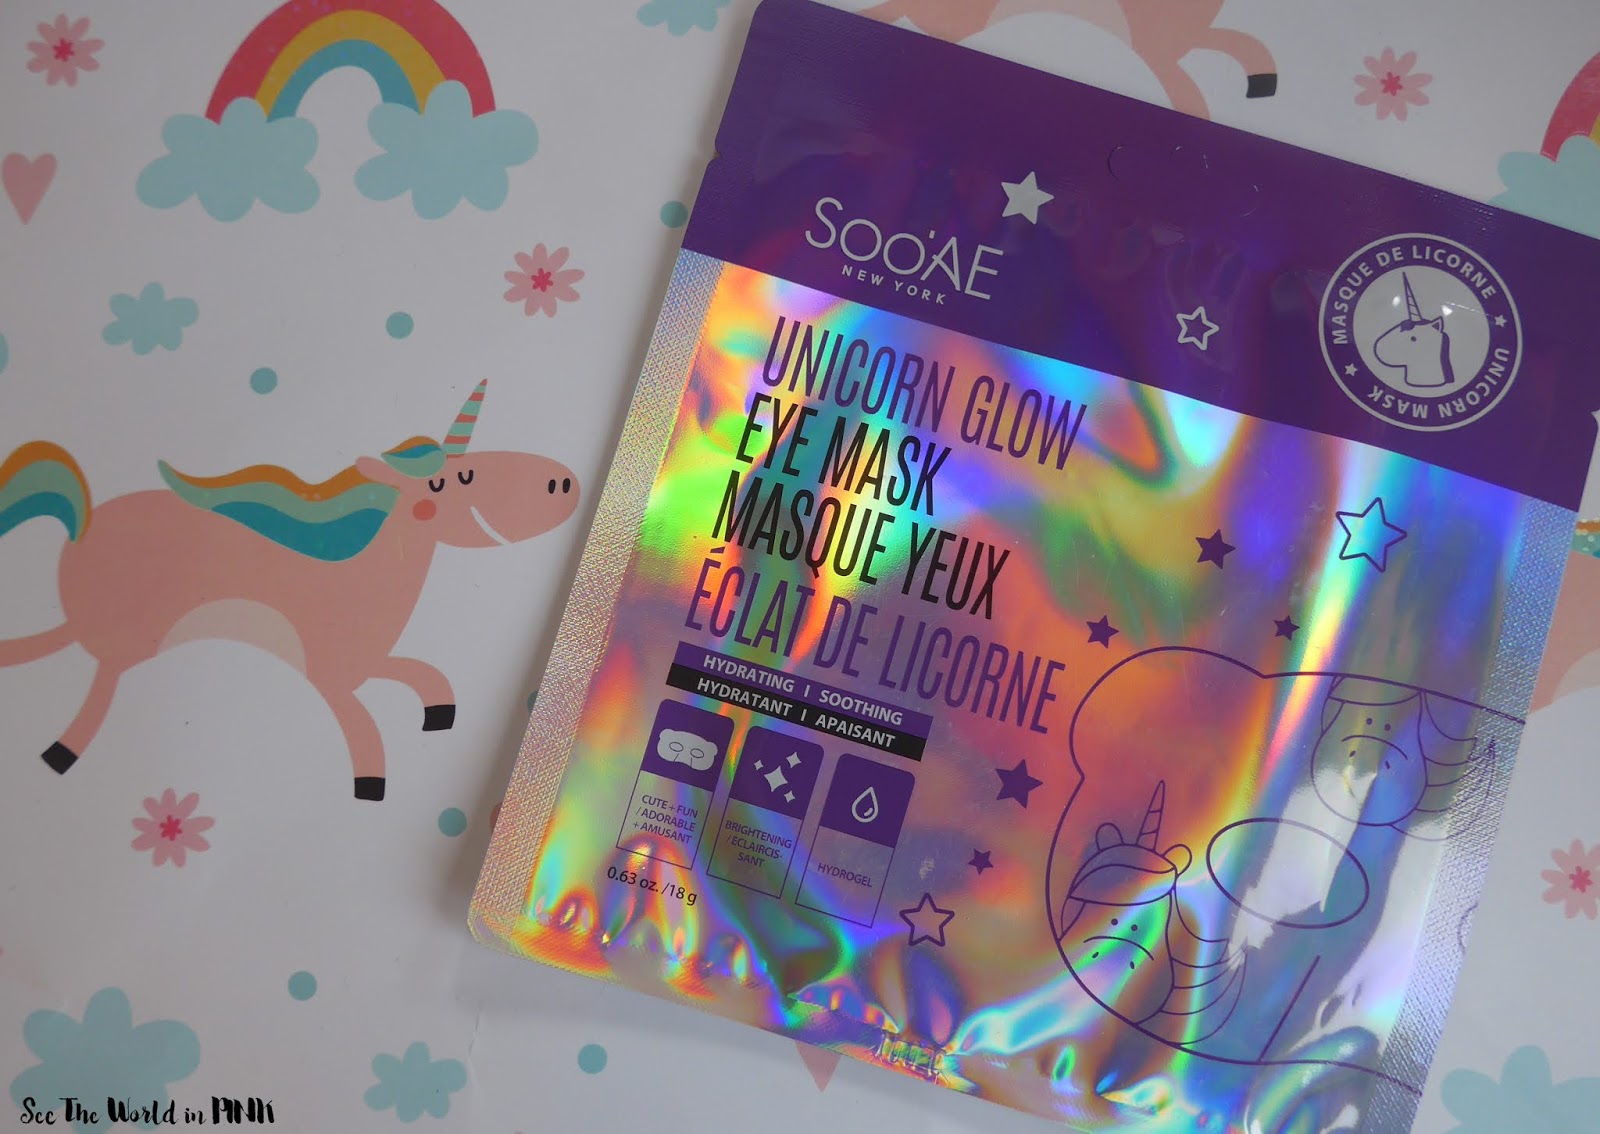 Skincare Sunday - SooAe Unicorn Glow Eye Mask 